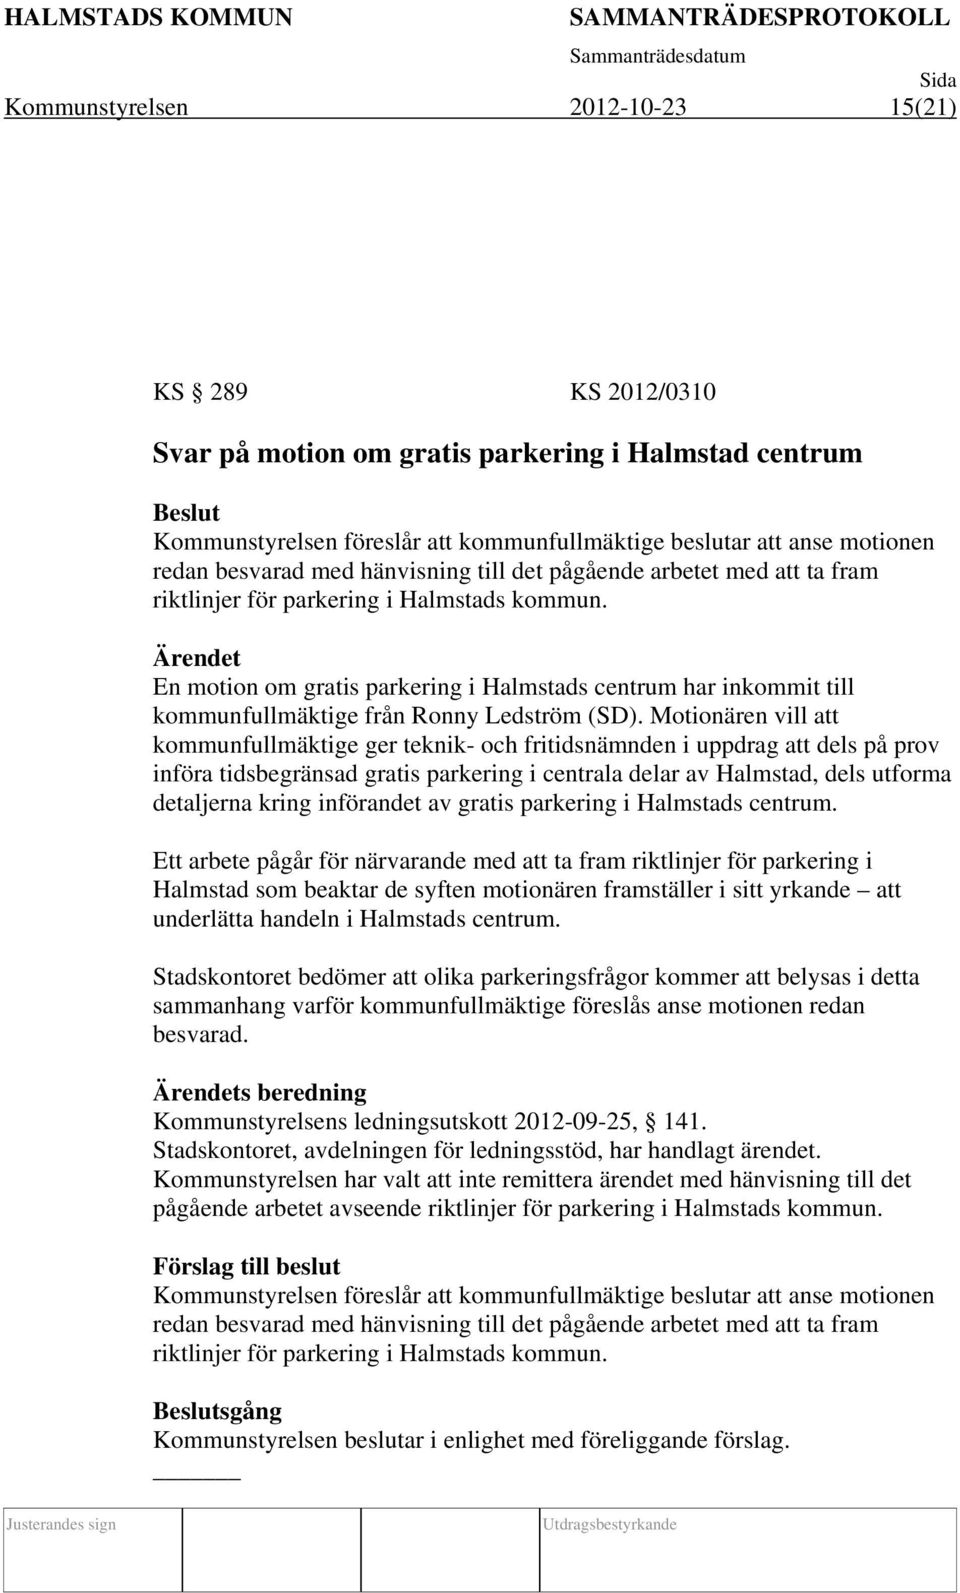 En motion om gratis parkering i Halmstads centrum har inkommit till kommunfullmäktige från Ronny Ledström (SD).